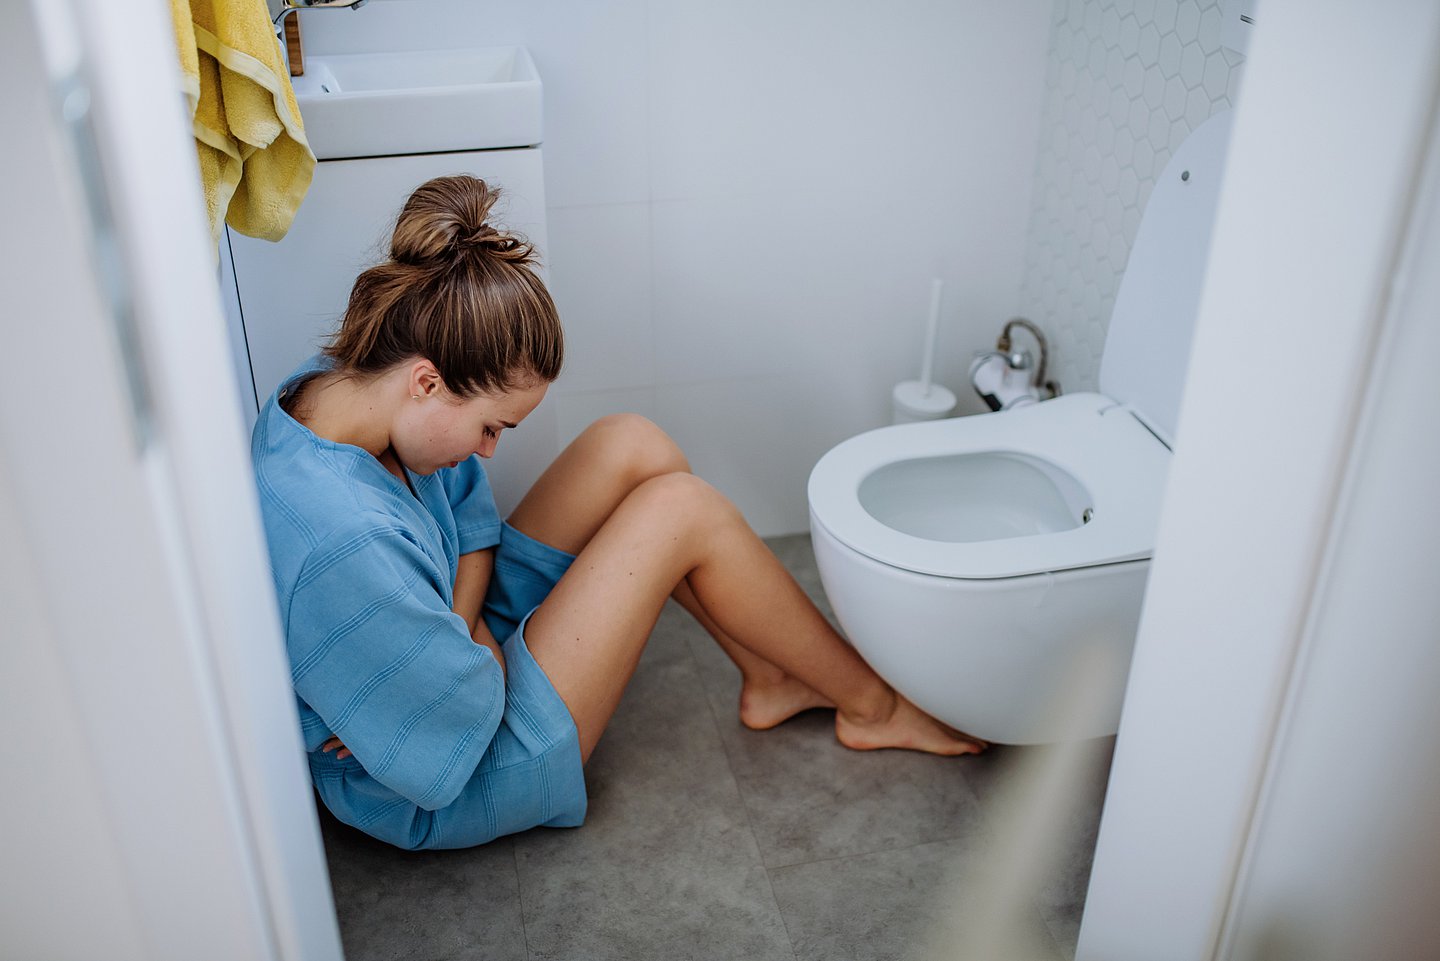 Foto zeigt eine Frau, die in einem WC auf dem Boden vor der Toilette sitzt und sich den Bauch hält.